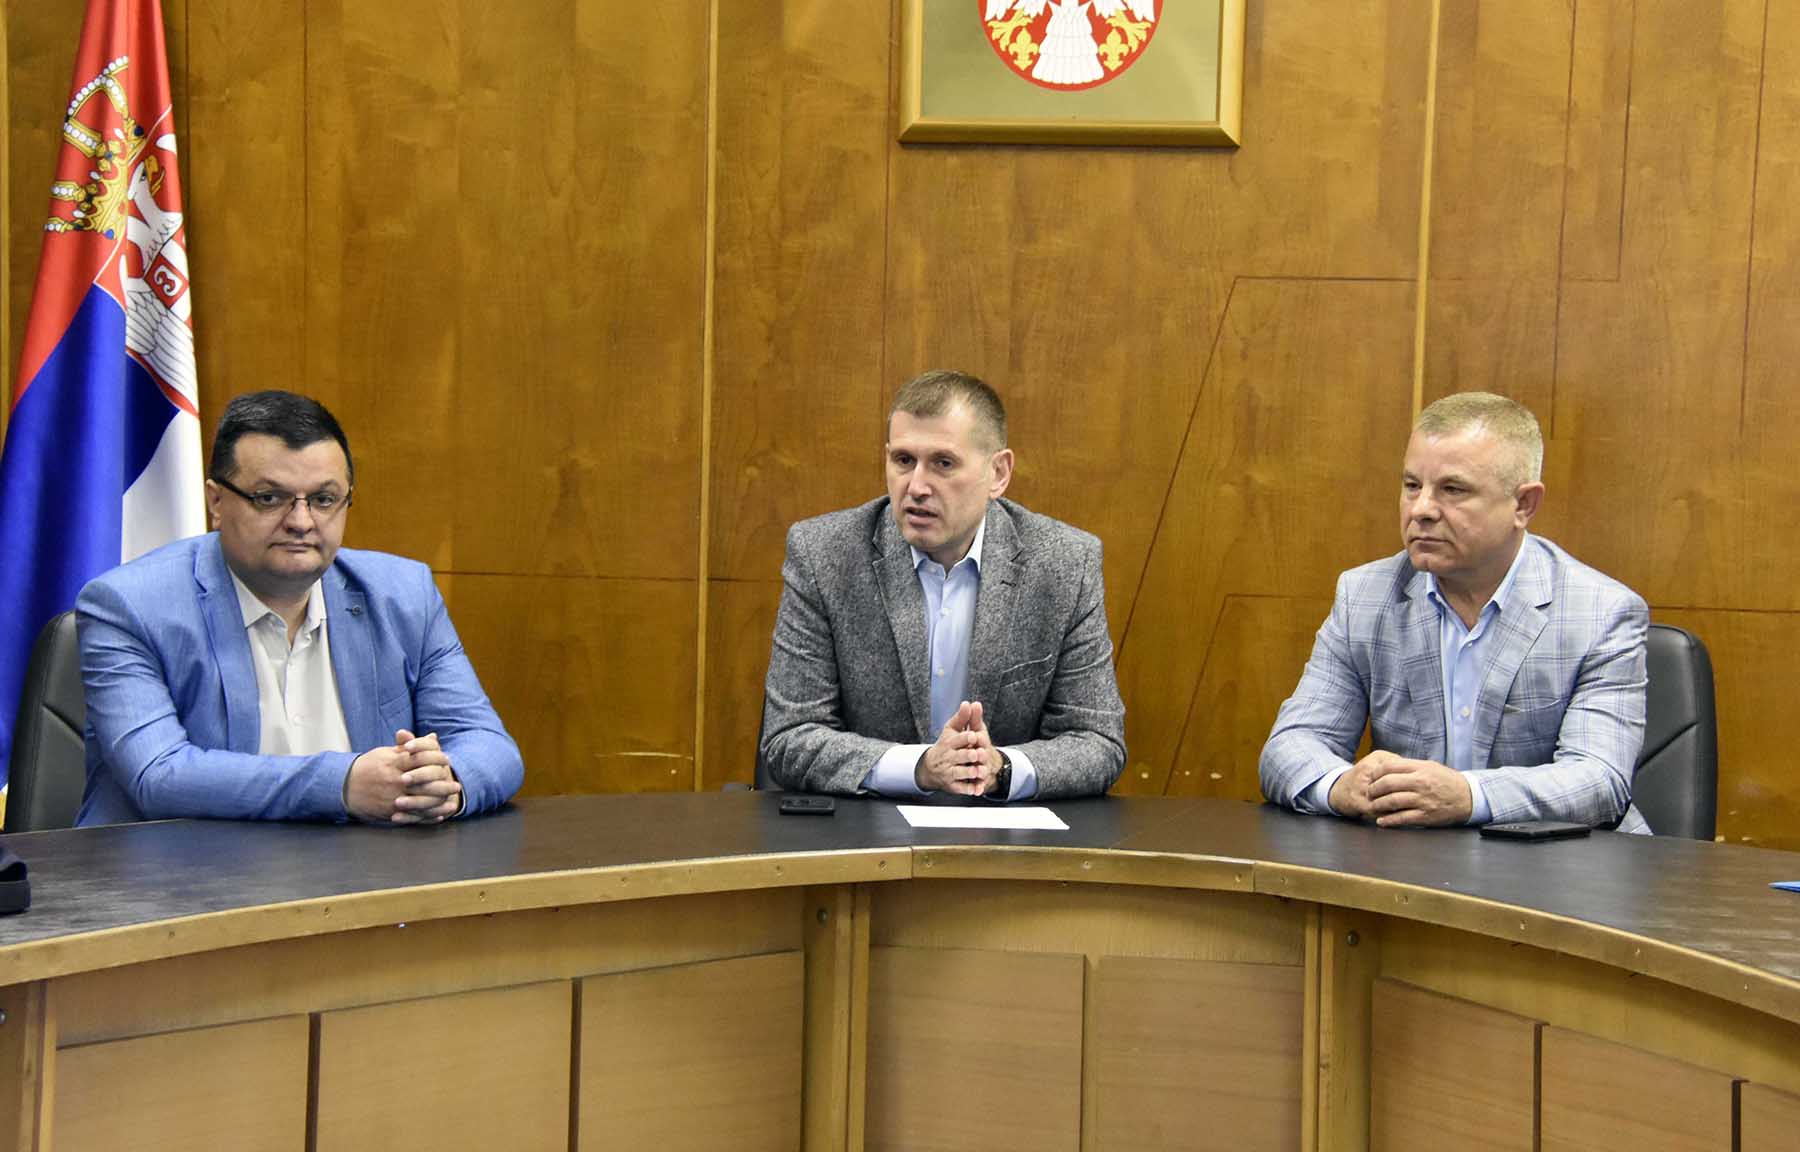 Миличковић похвалио професионалност полиције